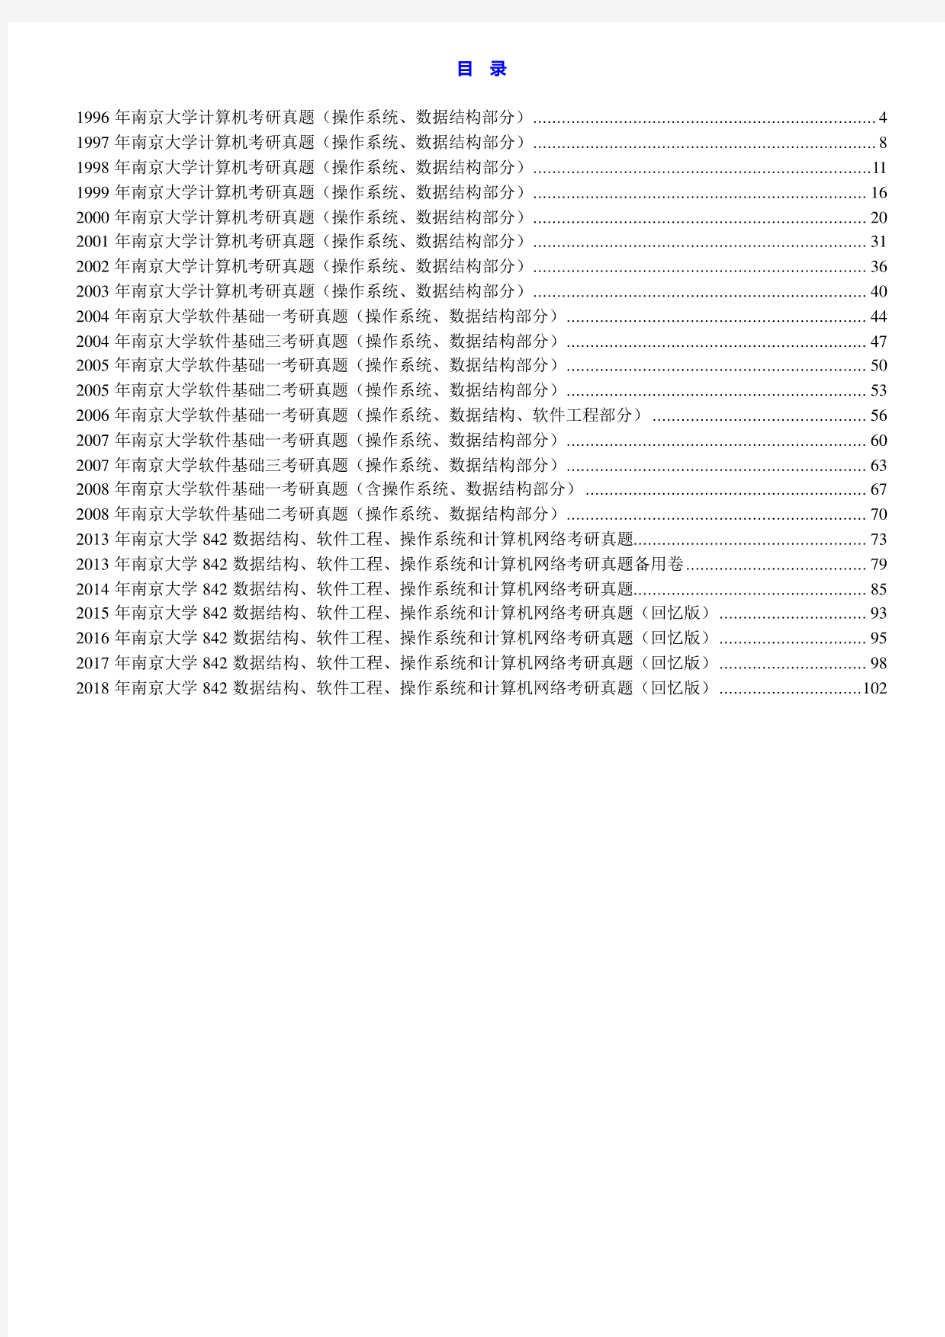 南京大学《842数据结构、软件工程、作系统和计算网络》历年考研真题汇编